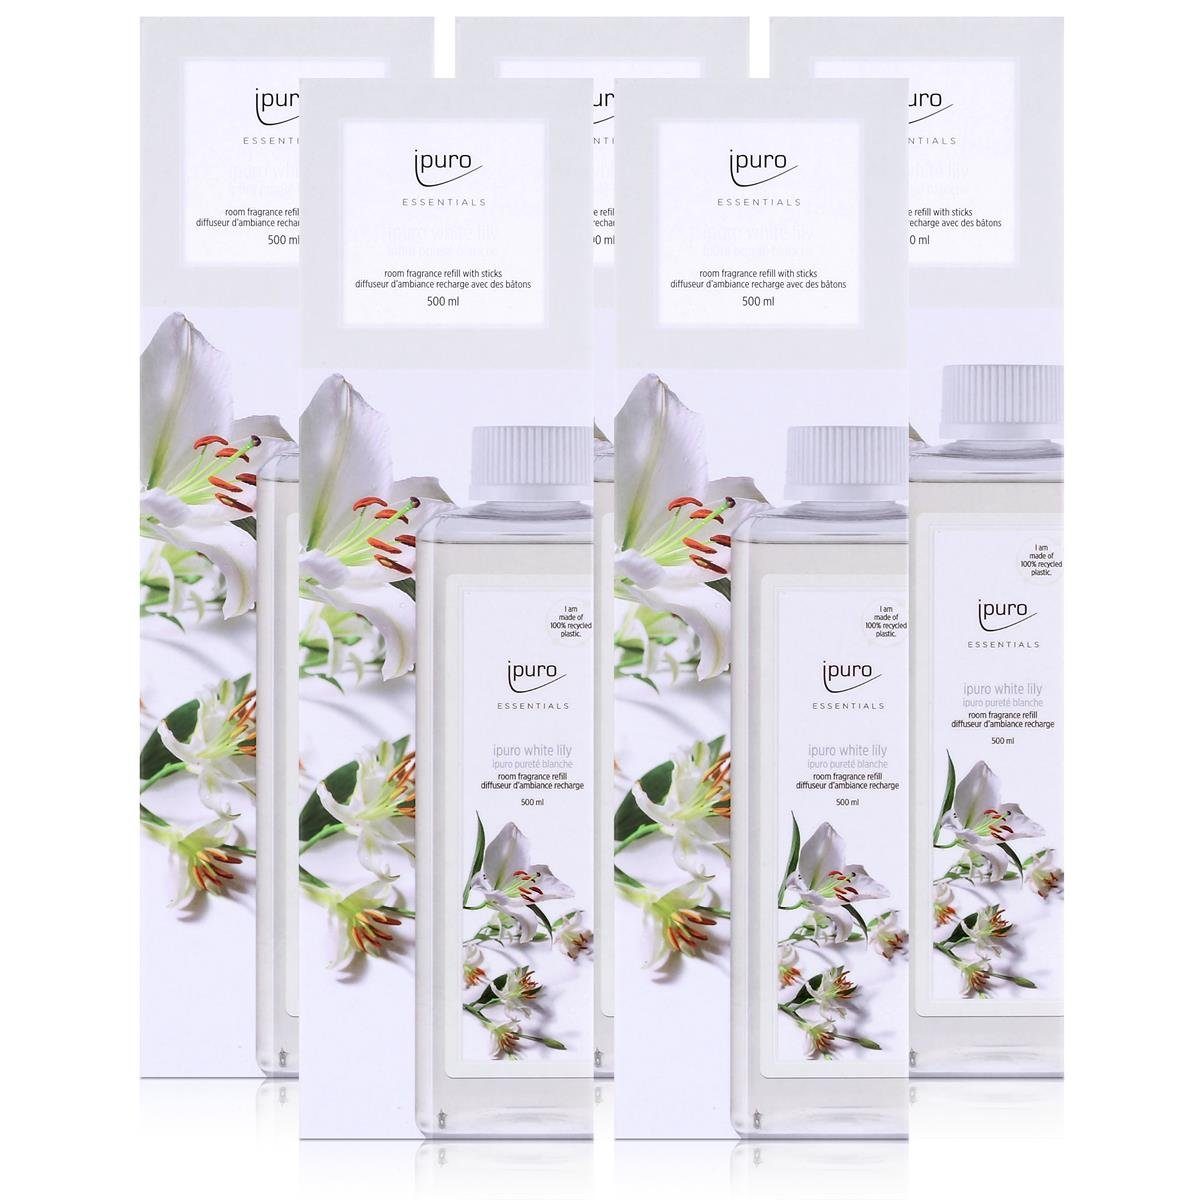 IPURO Raumduft Ipuro Essentials white lily Refill 500ml Nachfüllflasche Raumduft (5er